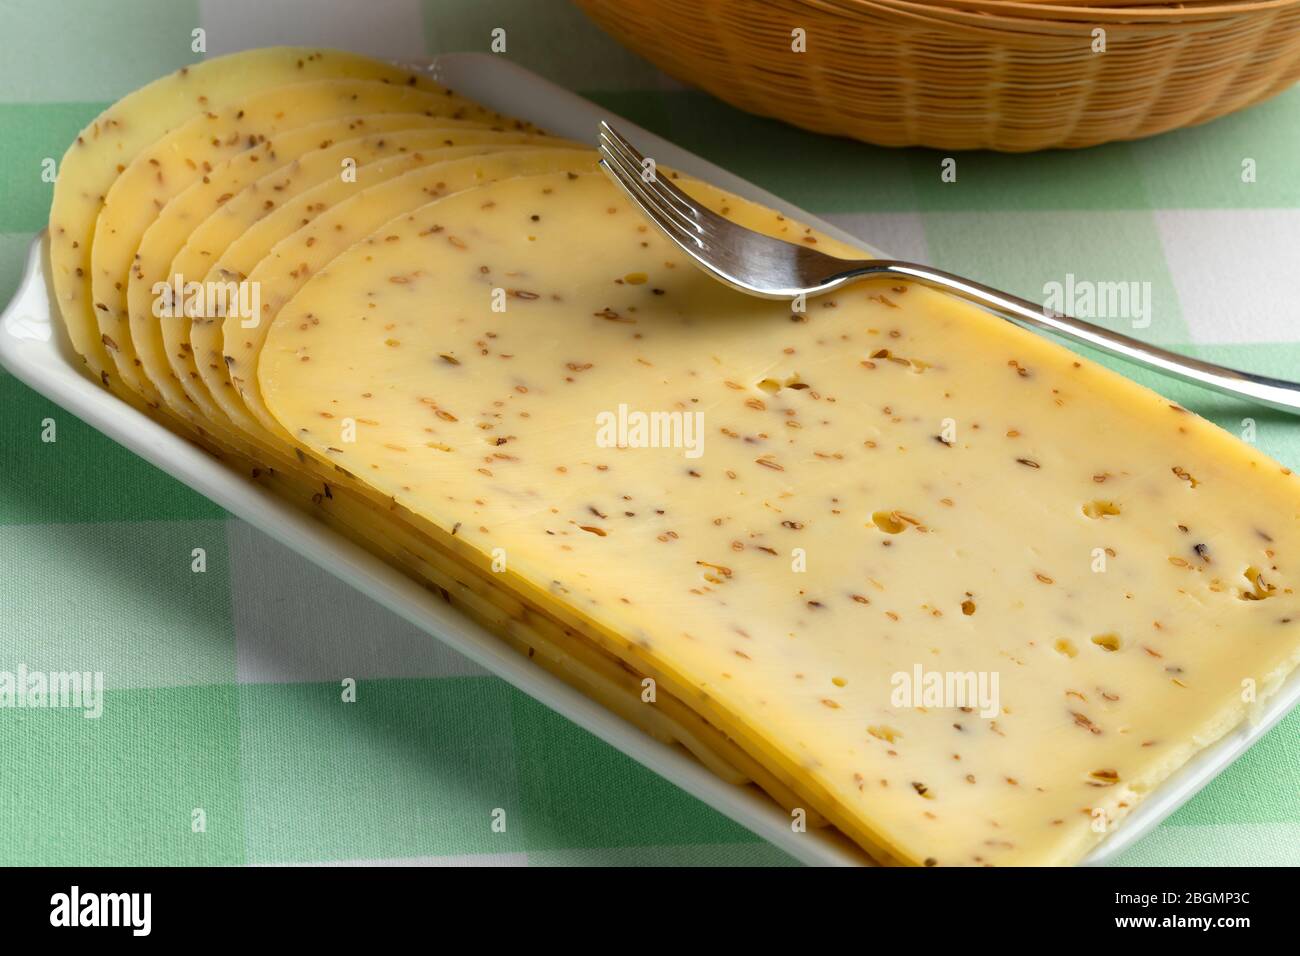 Plato con queso tradicional de comino gouda cortado en rodajas Foto de stock